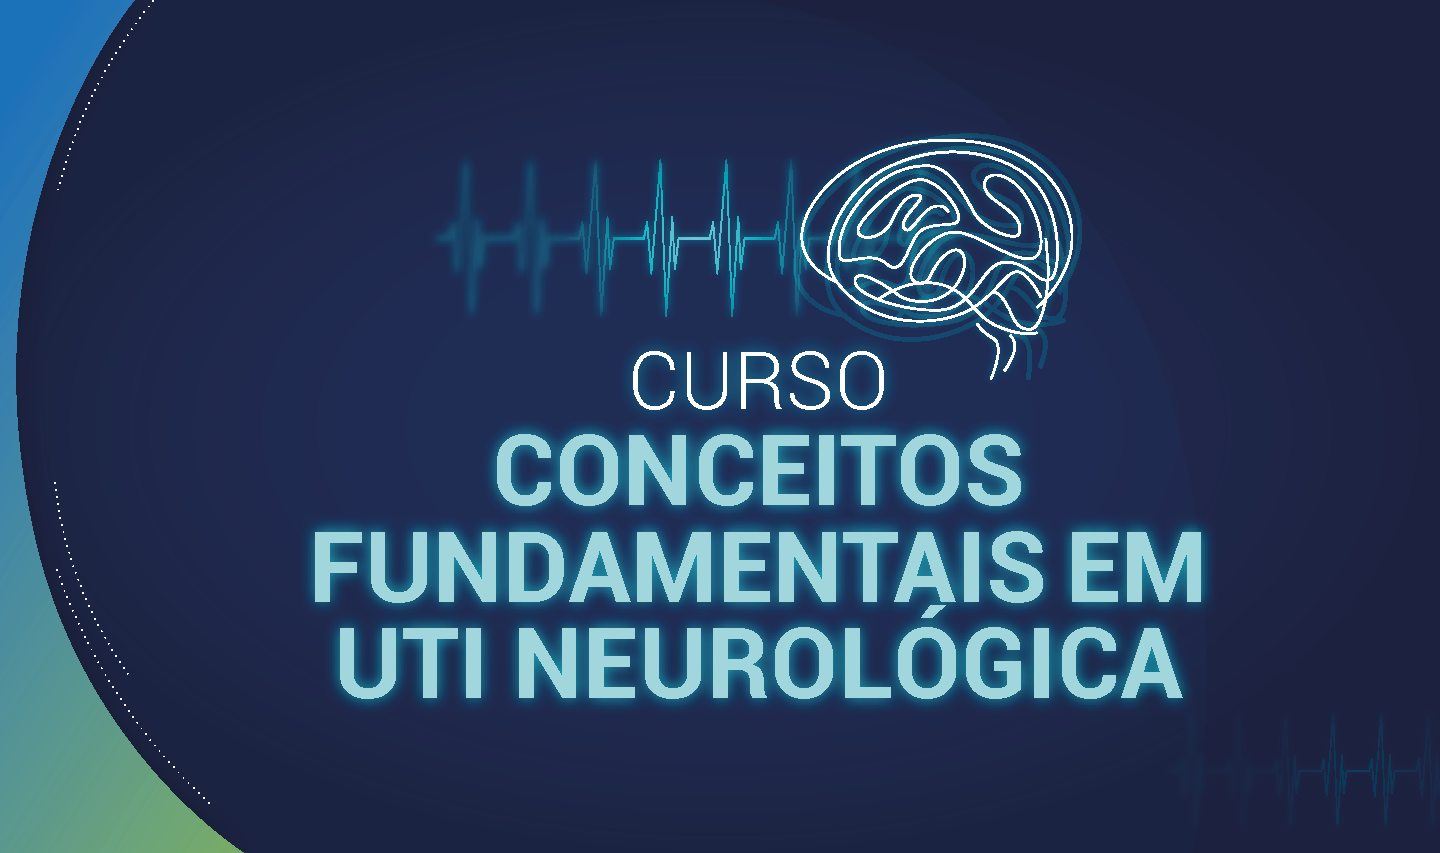 CONCEITOS FUNDAMENTAIS EM UTI NEONATAL NEUROLÓGICA